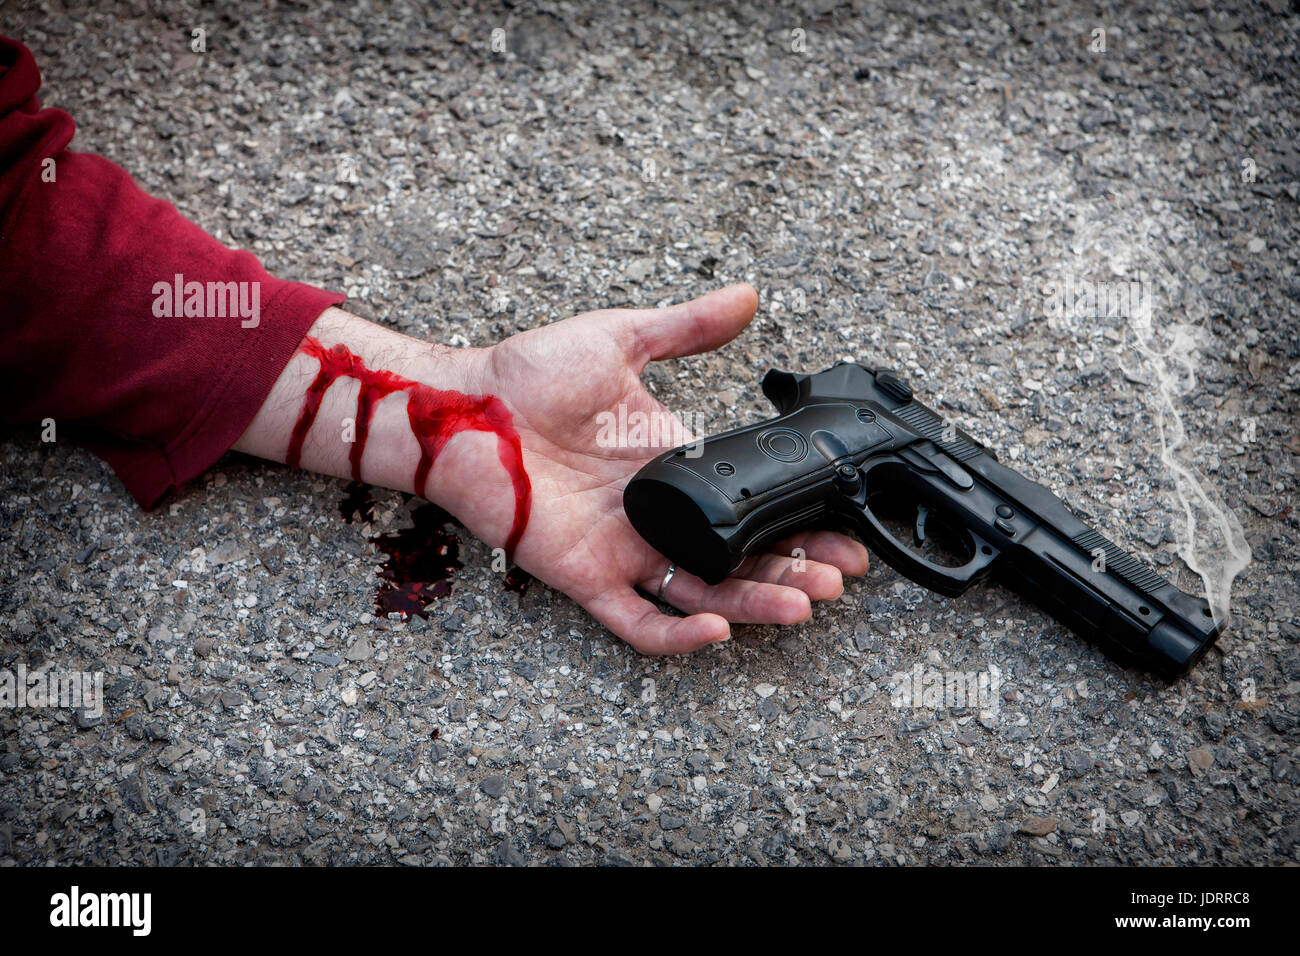 El hombre con la pistola en la mano ensangrentada yace muerto en el asfalto de la víctima de asesinato Foto de stock